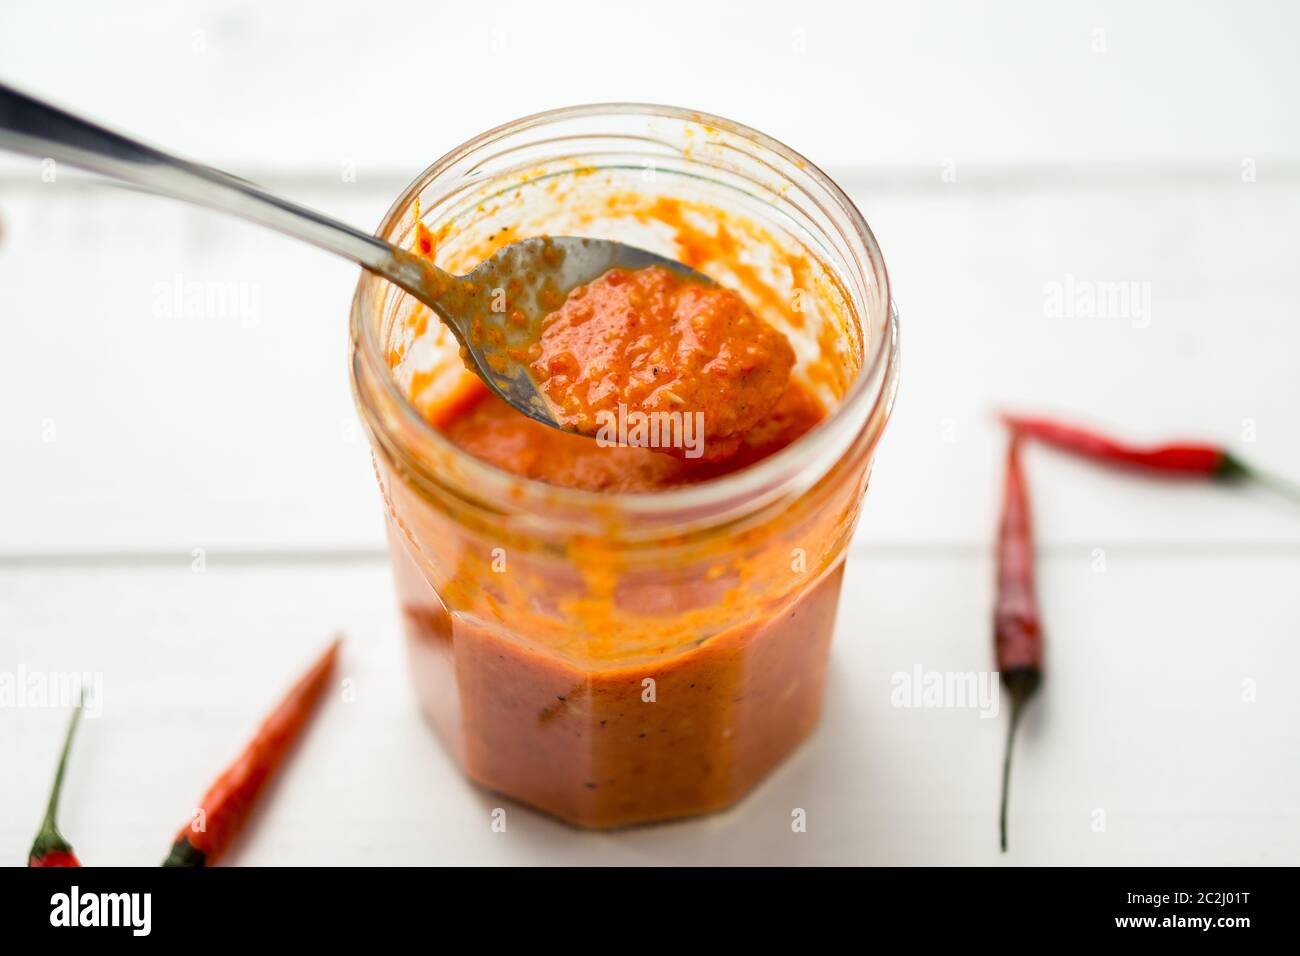 Piri Piri Sauce ist eine Art von Chili-Pfeffer-Sauce als Gewürz oder Marinade traditionell in der portugiesischen Küche verwendet. Hier in einem Glas gesehen. Stockfoto